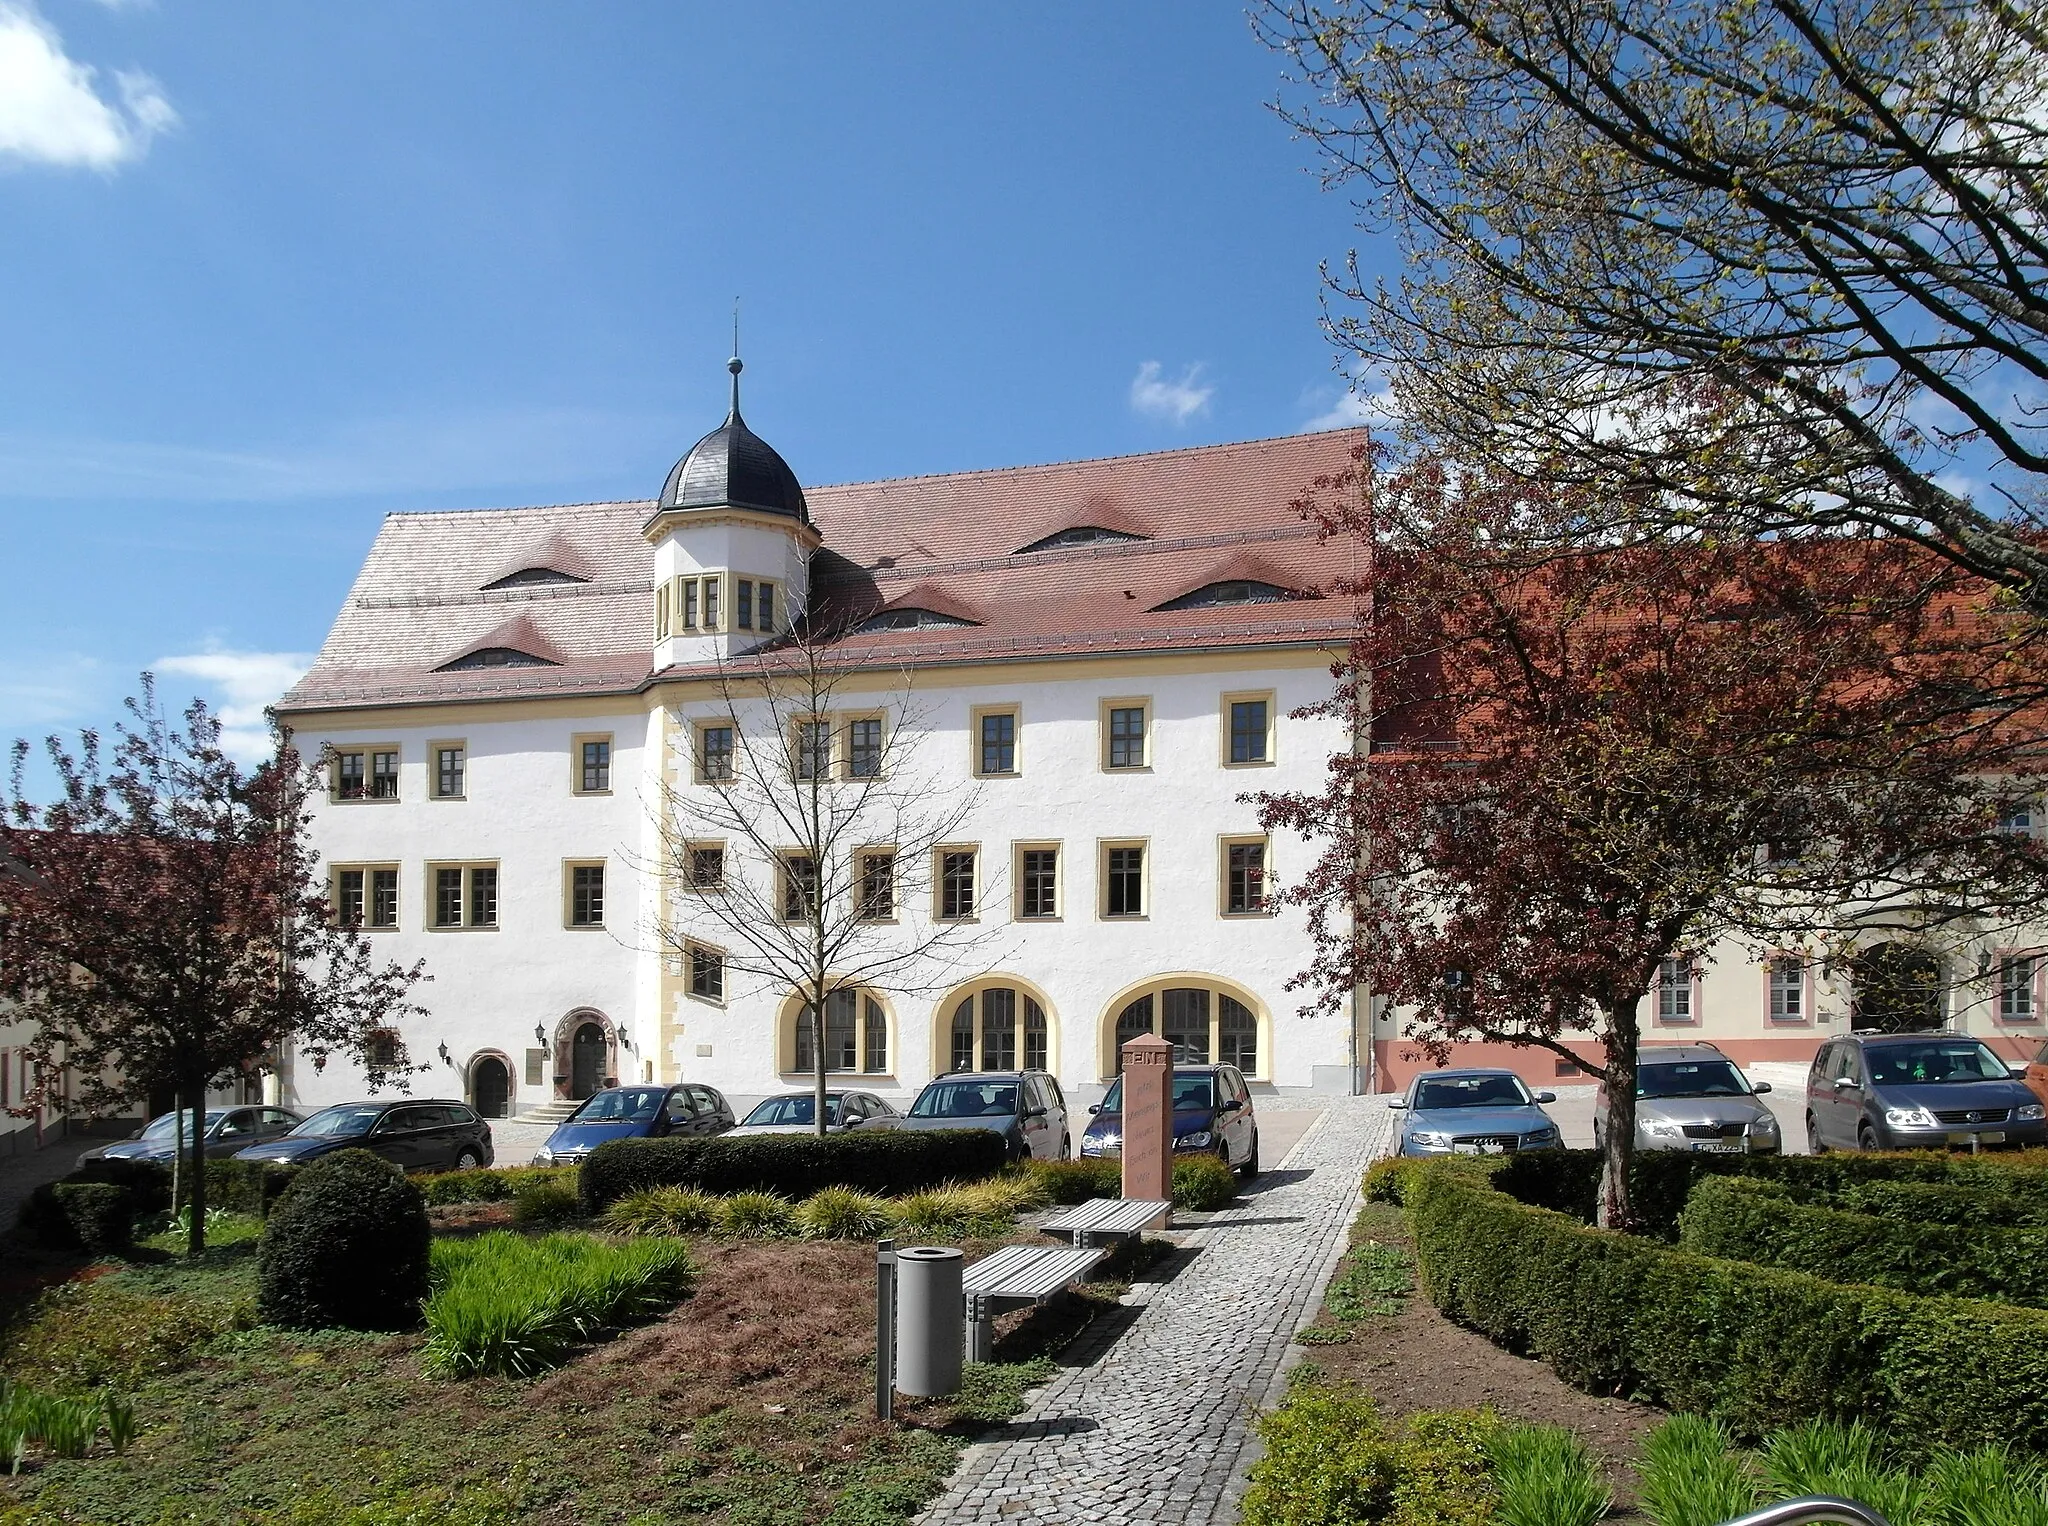 Image of Limbach-Oberfrohna